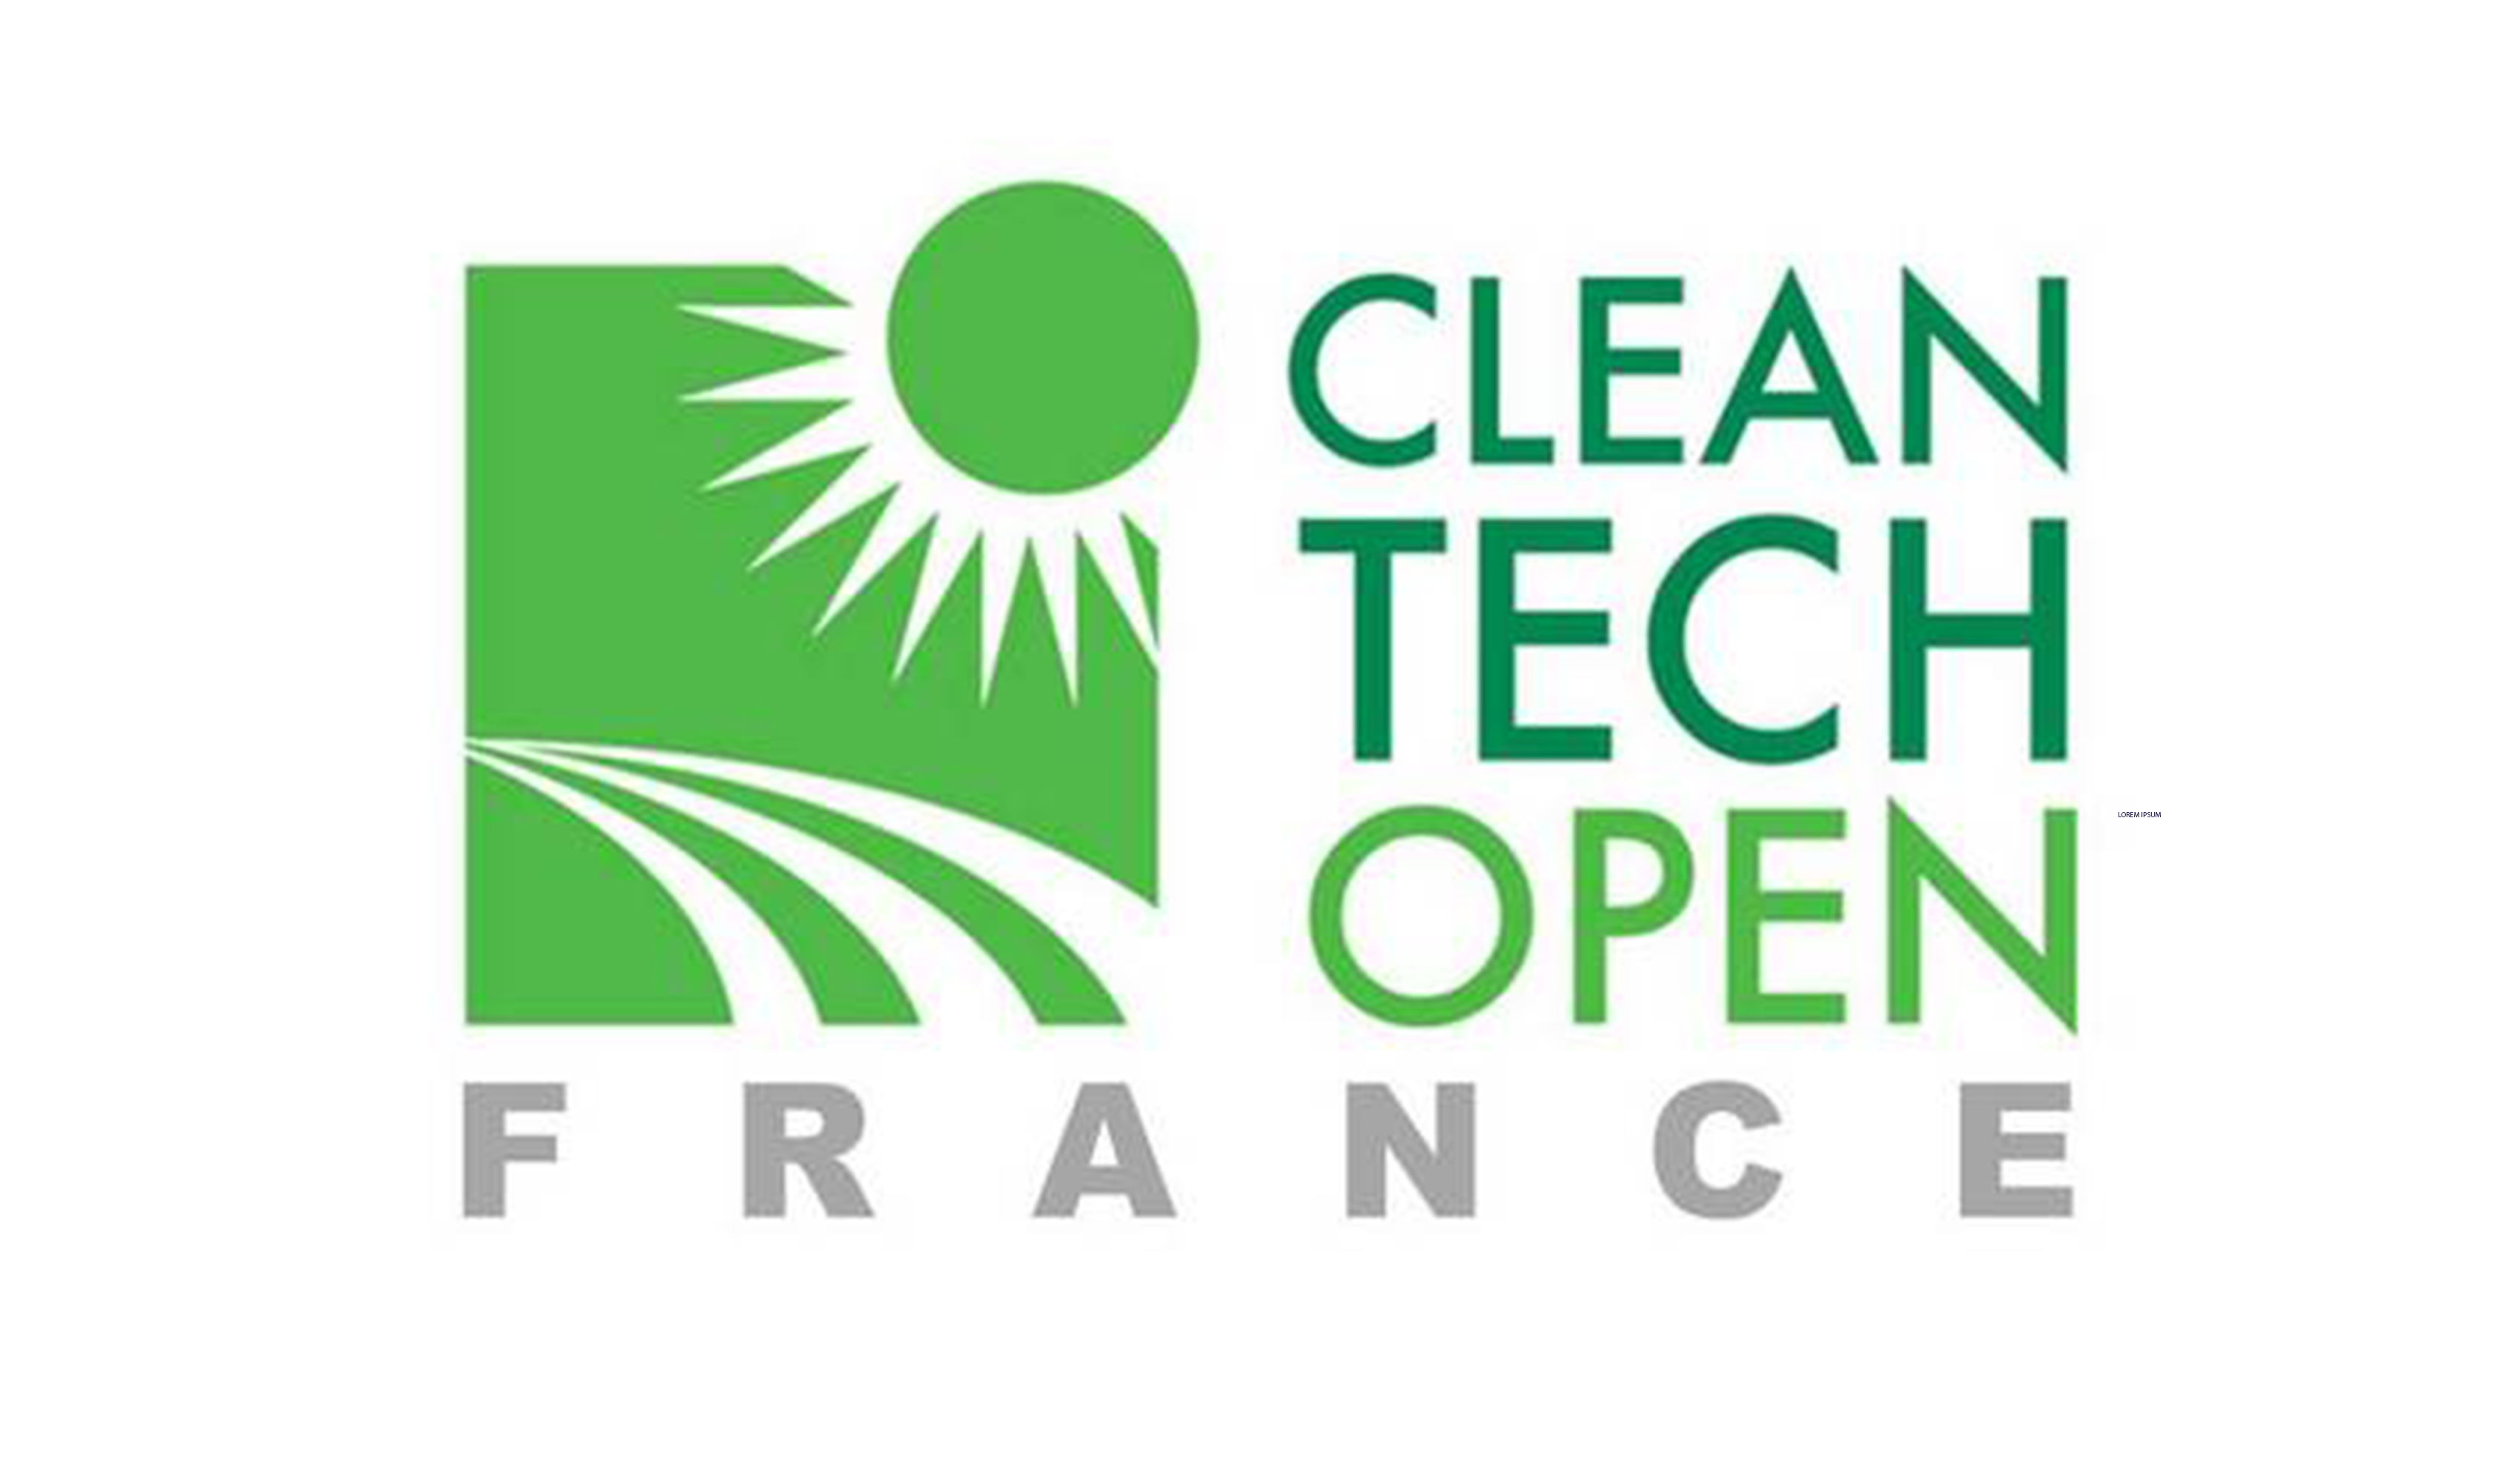 Cleantech Open France - Concours startups 2020 - Appel à Projets